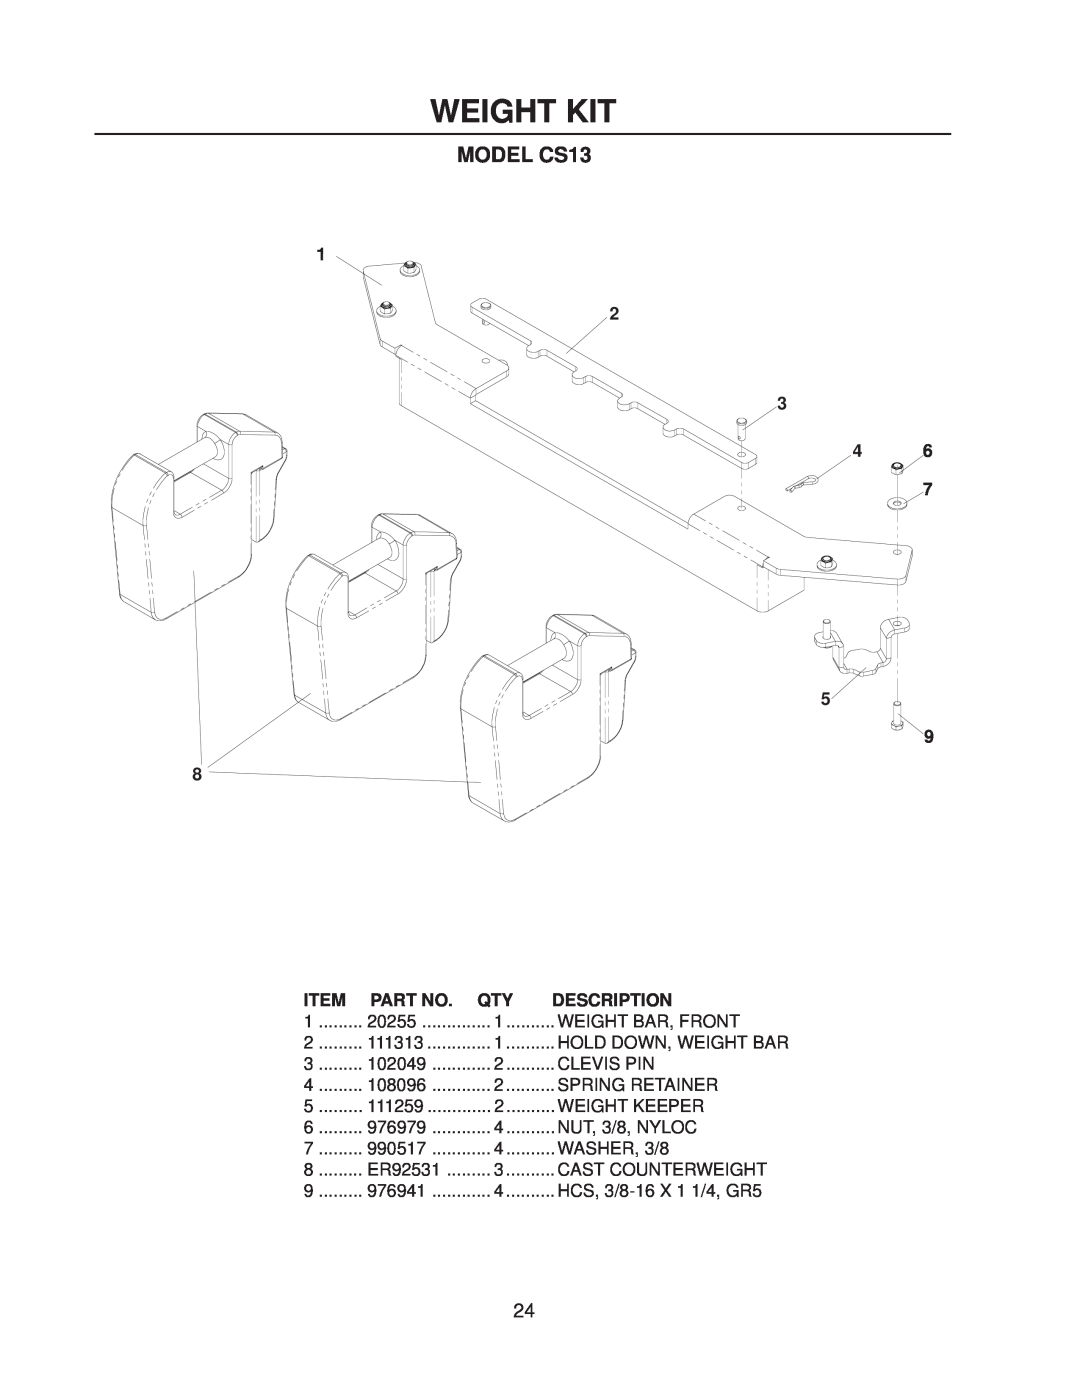 Yazoo/Kees CS9 manual Weight Kit, MODEL CS13, Description 